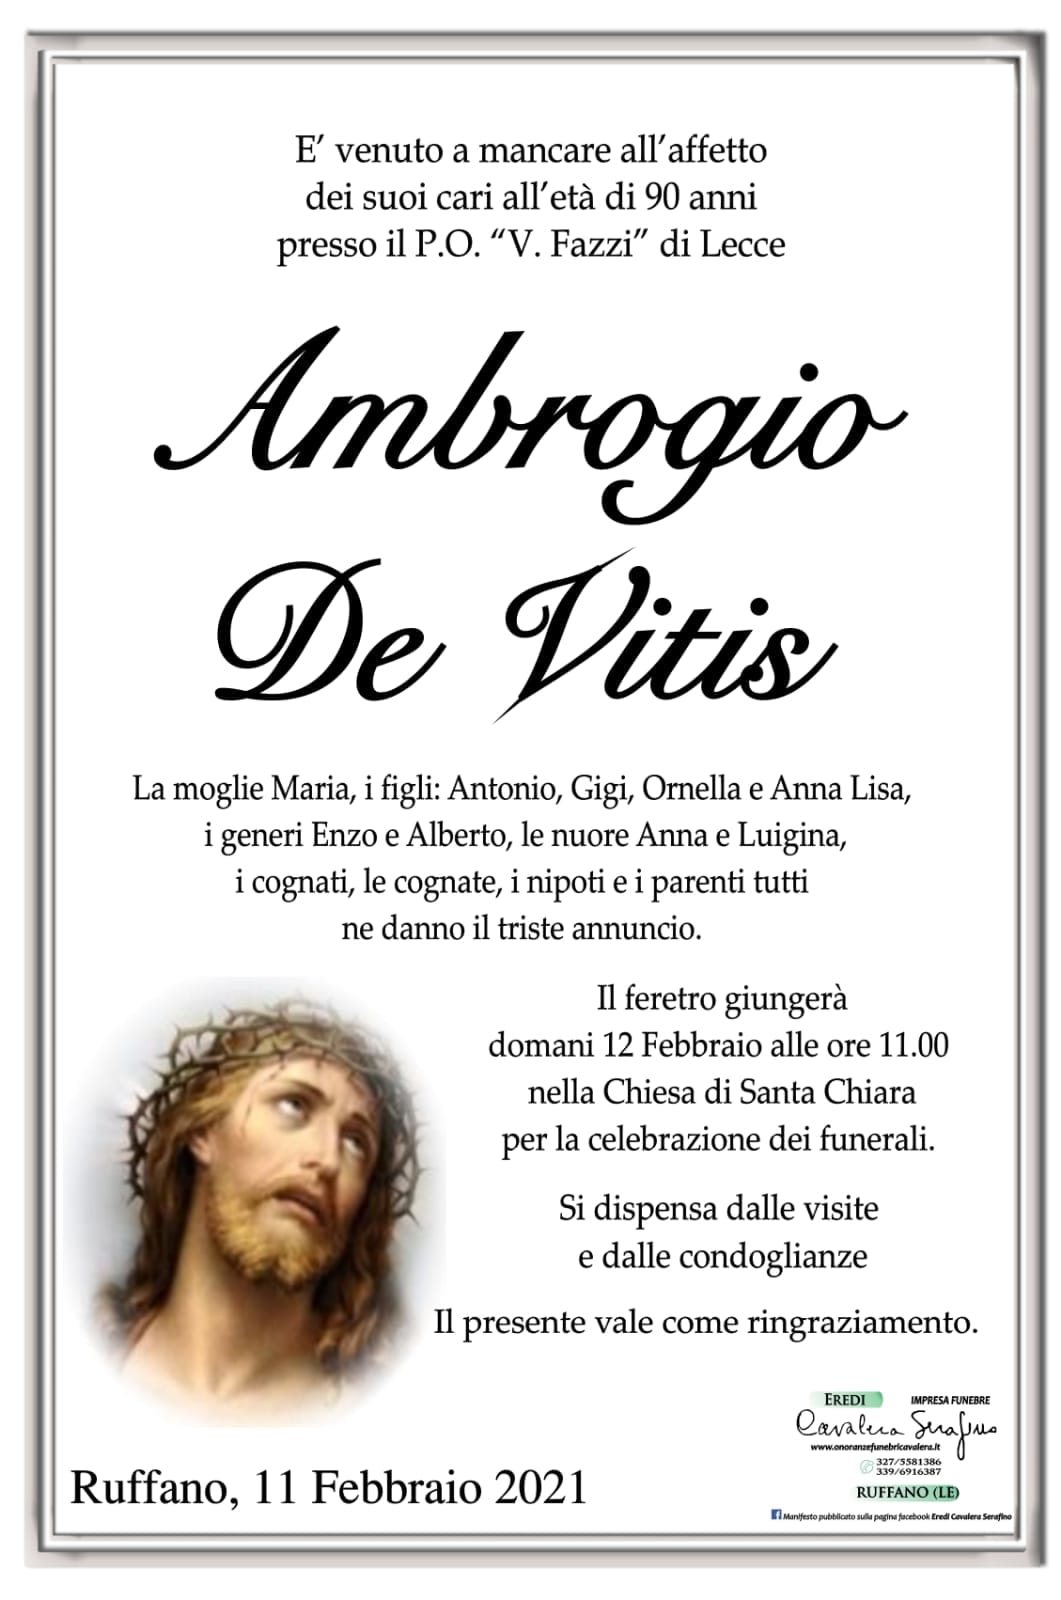 Ambrogio De Vitis